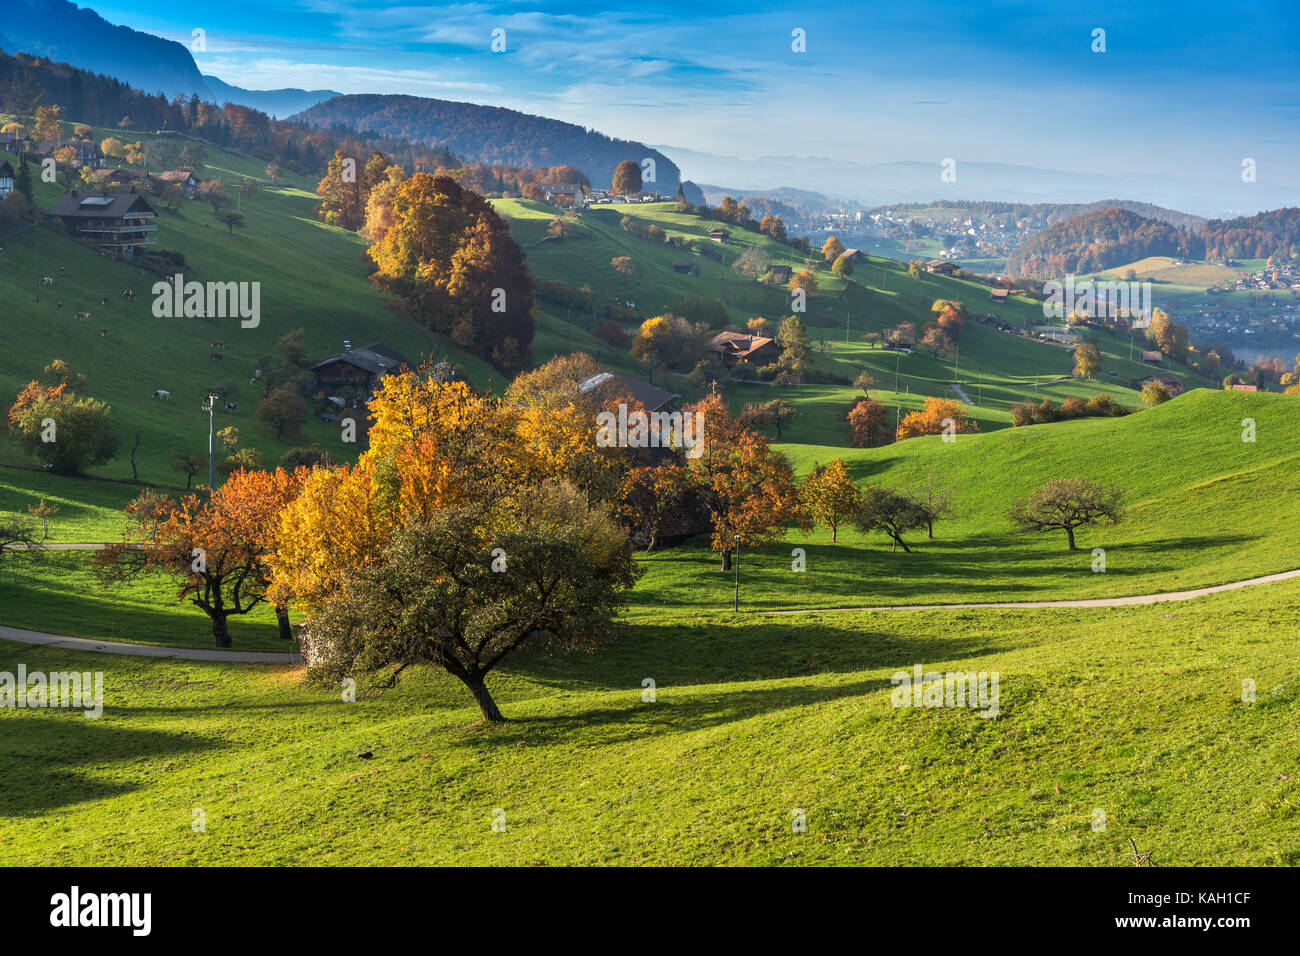 Herbst Landschaft typisch Schweiz Dorf in der Nähe von Interlaken, Kanton  Bern Stockfotografie - Alamy